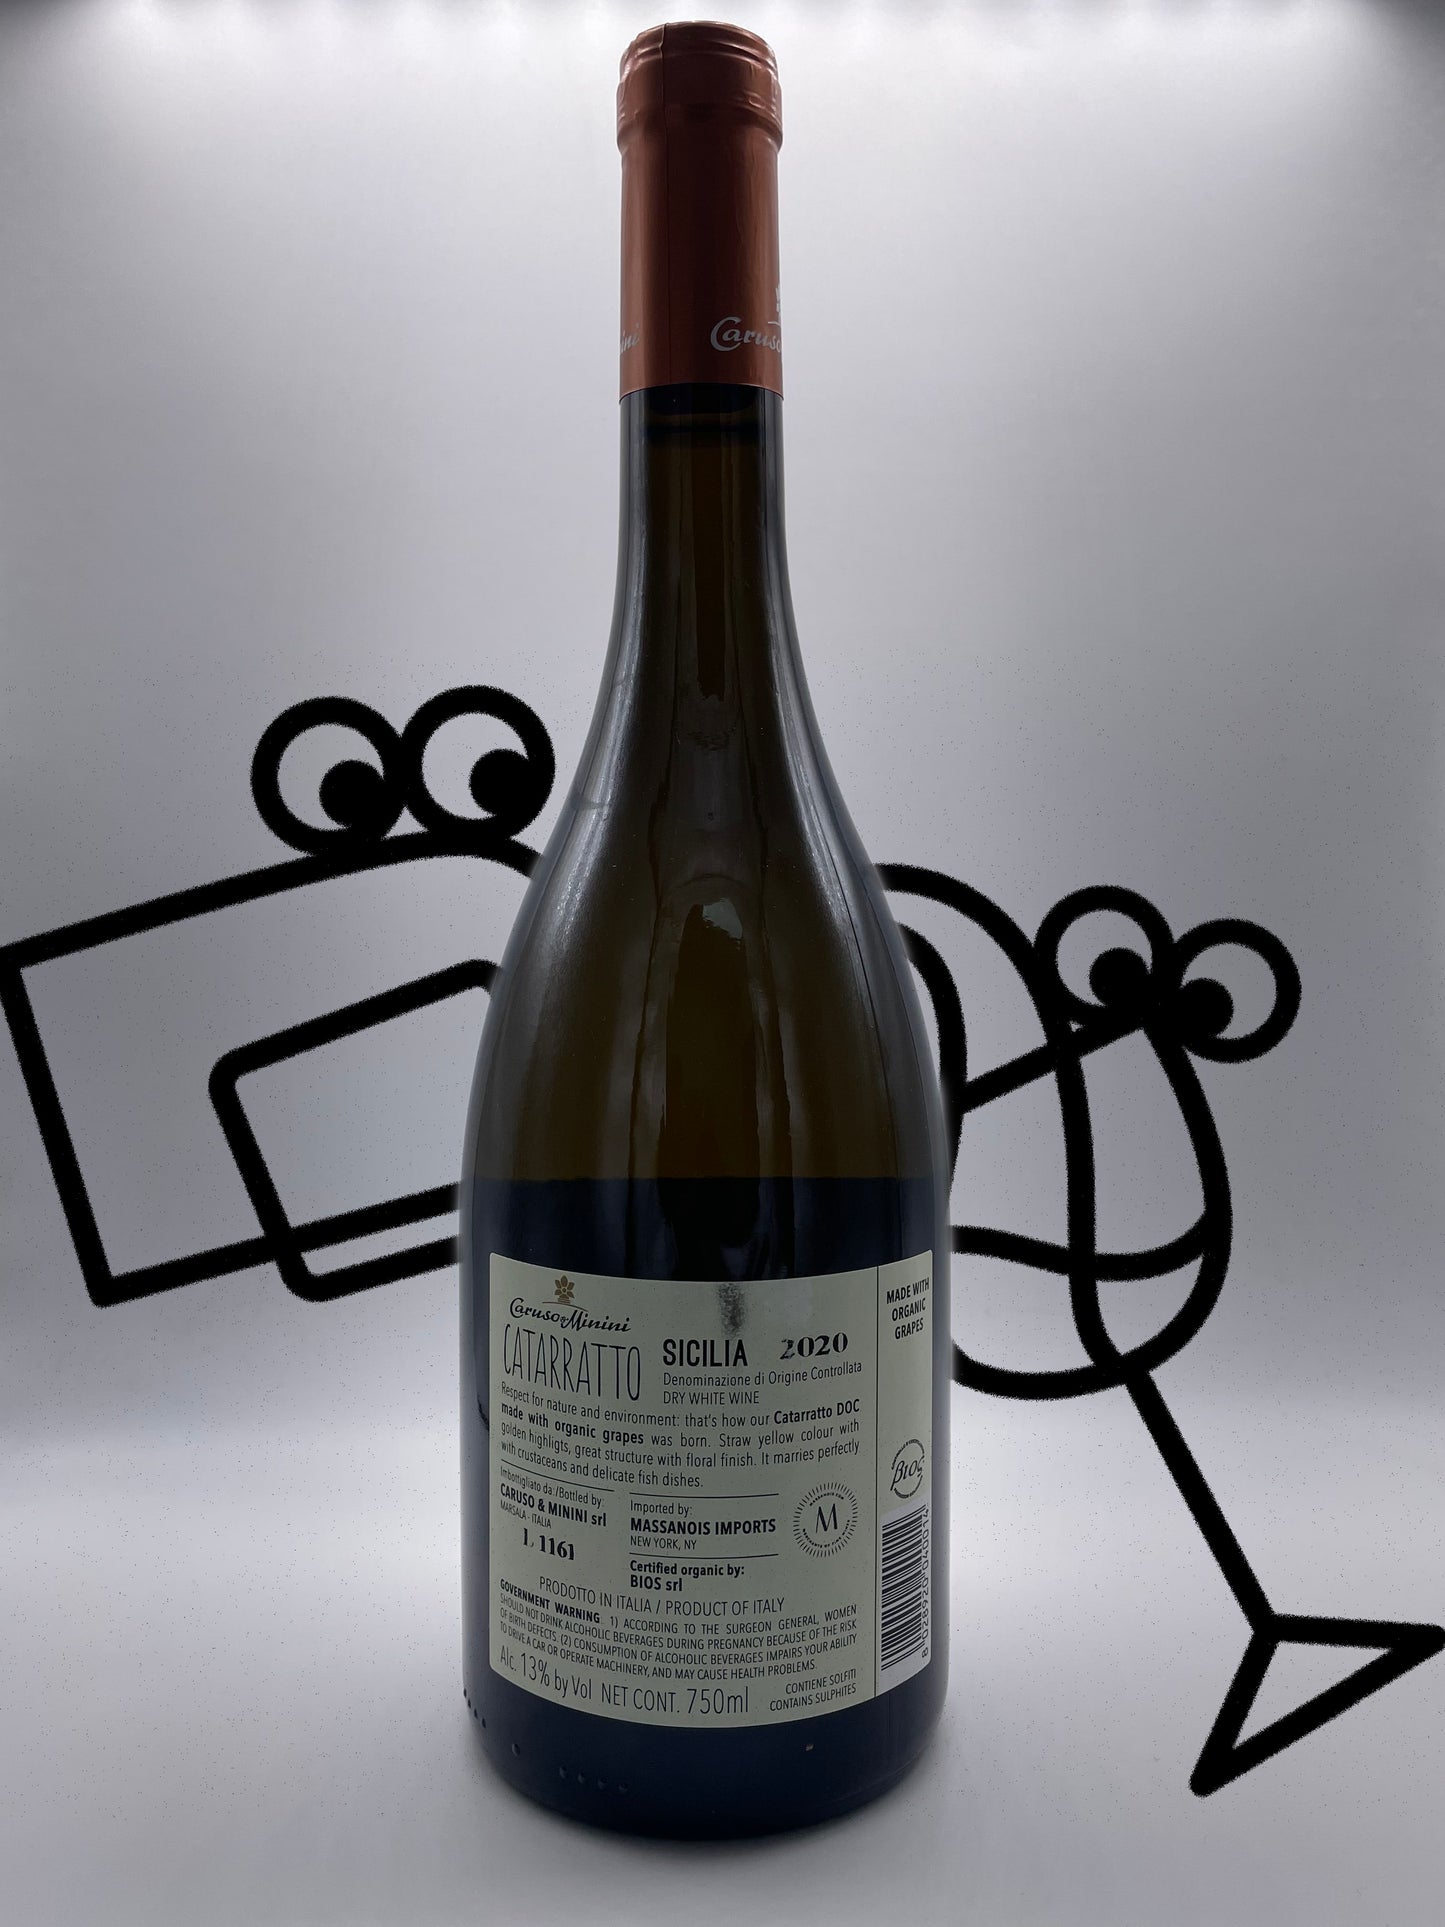 Caruso & Minini 'Naturalmente Bio' Catarratto 2020 Sicily, Italy - Williston Park Wines & Spirits